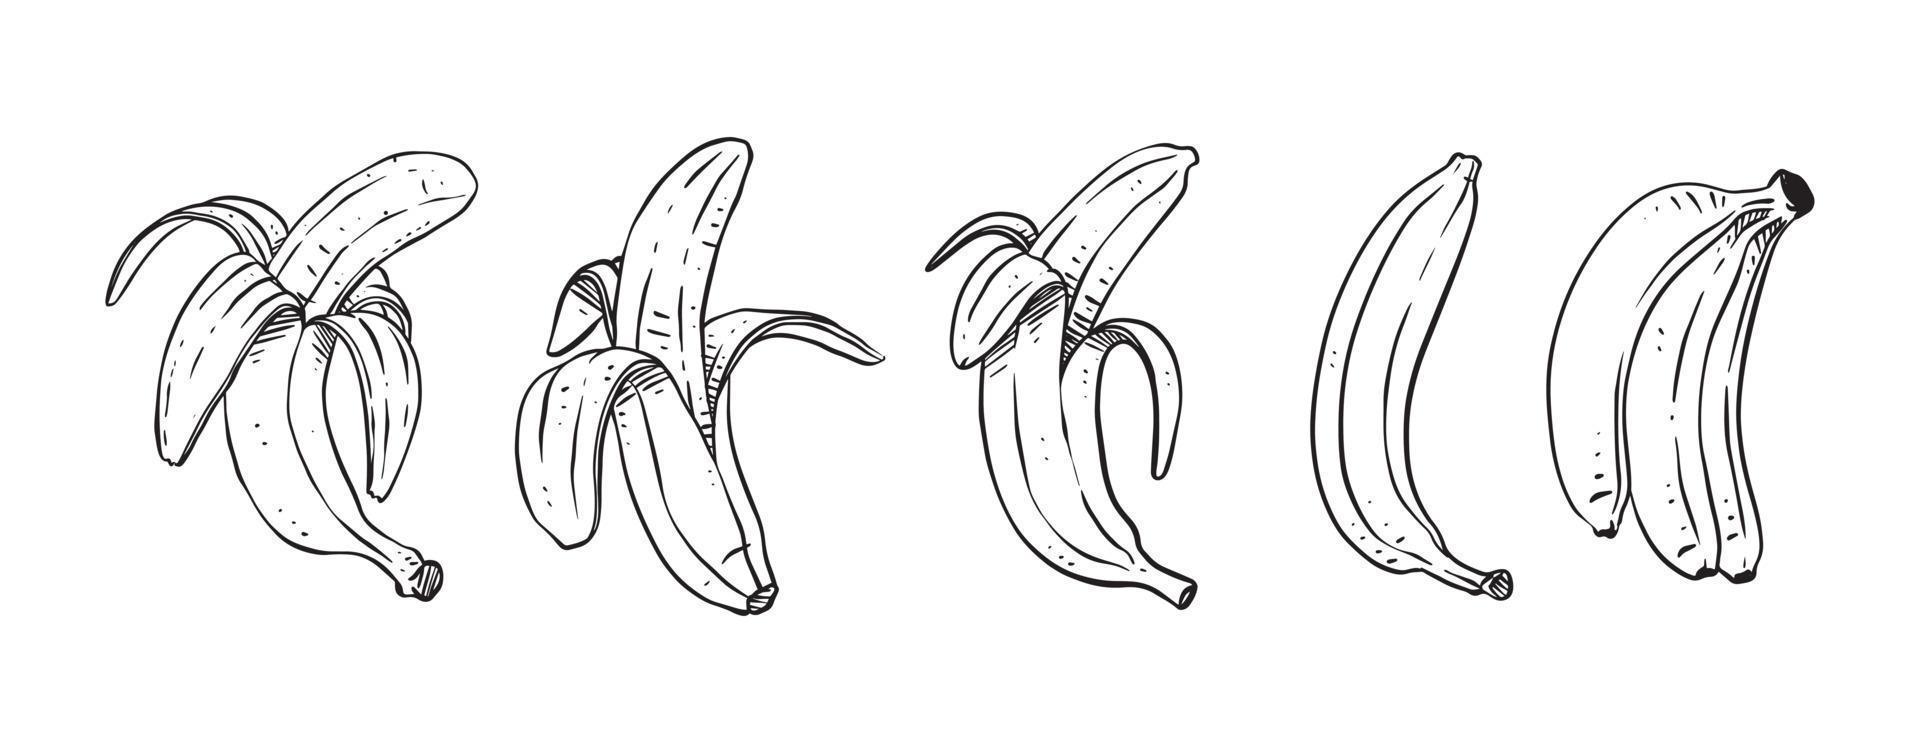 conjunto de bananas descascadas, ilustração vetorial desenhada à mão vetor